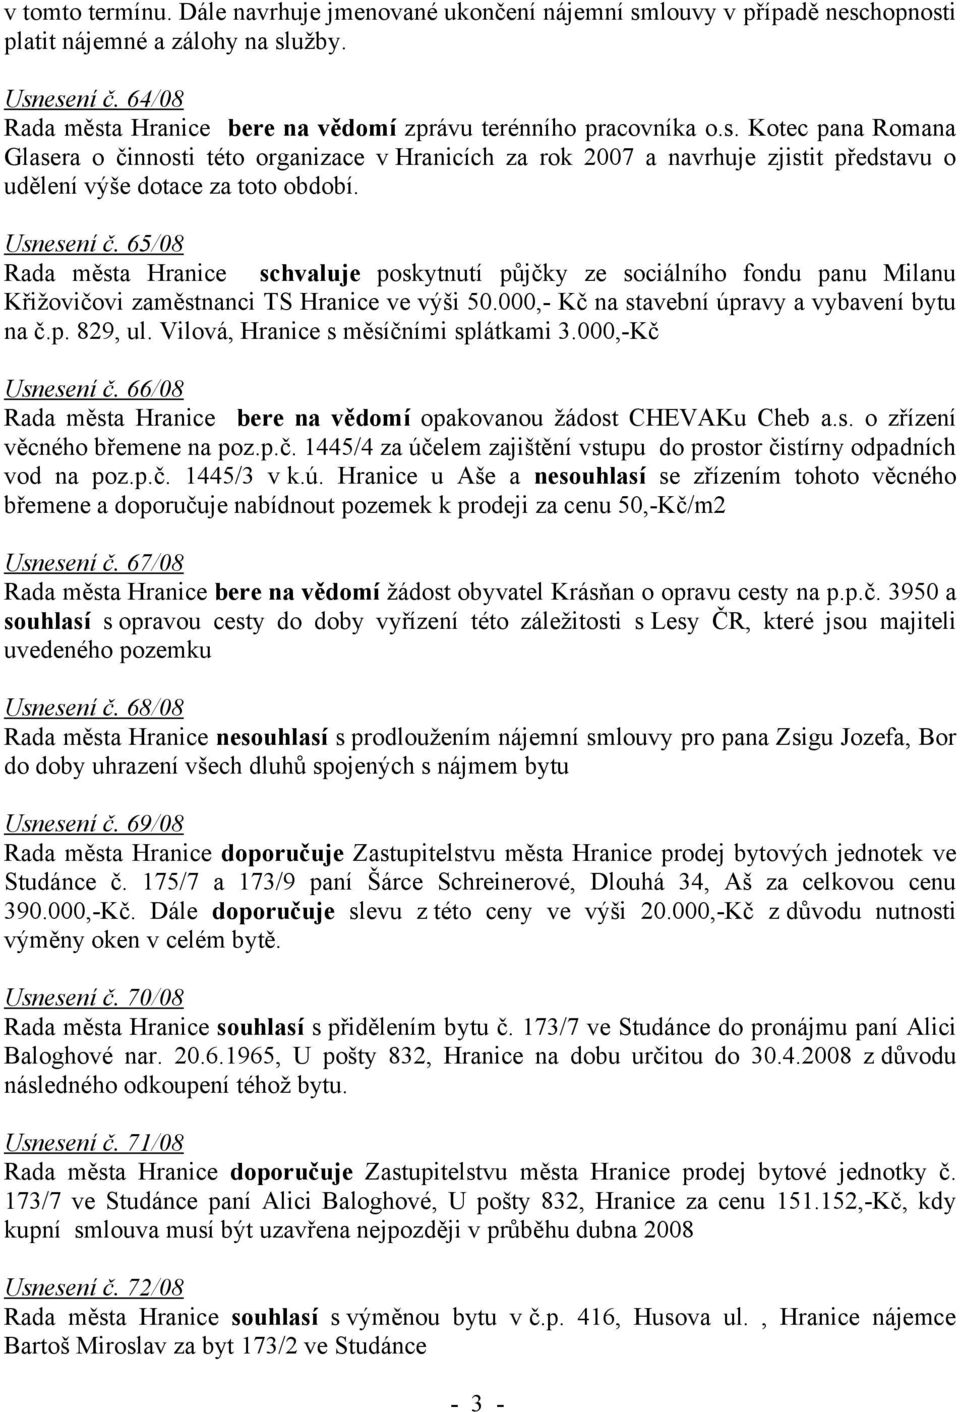 Usnesení č. 65/08 Rada města Hranice schvaluje poskytnutí půjčky ze sociálního fondu panu Milanu Křižovičovi zaměstnanci TS Hranice ve výši 50.000,- Kč na stavební úpravy a vybavení bytu na č.p. 829, ul.